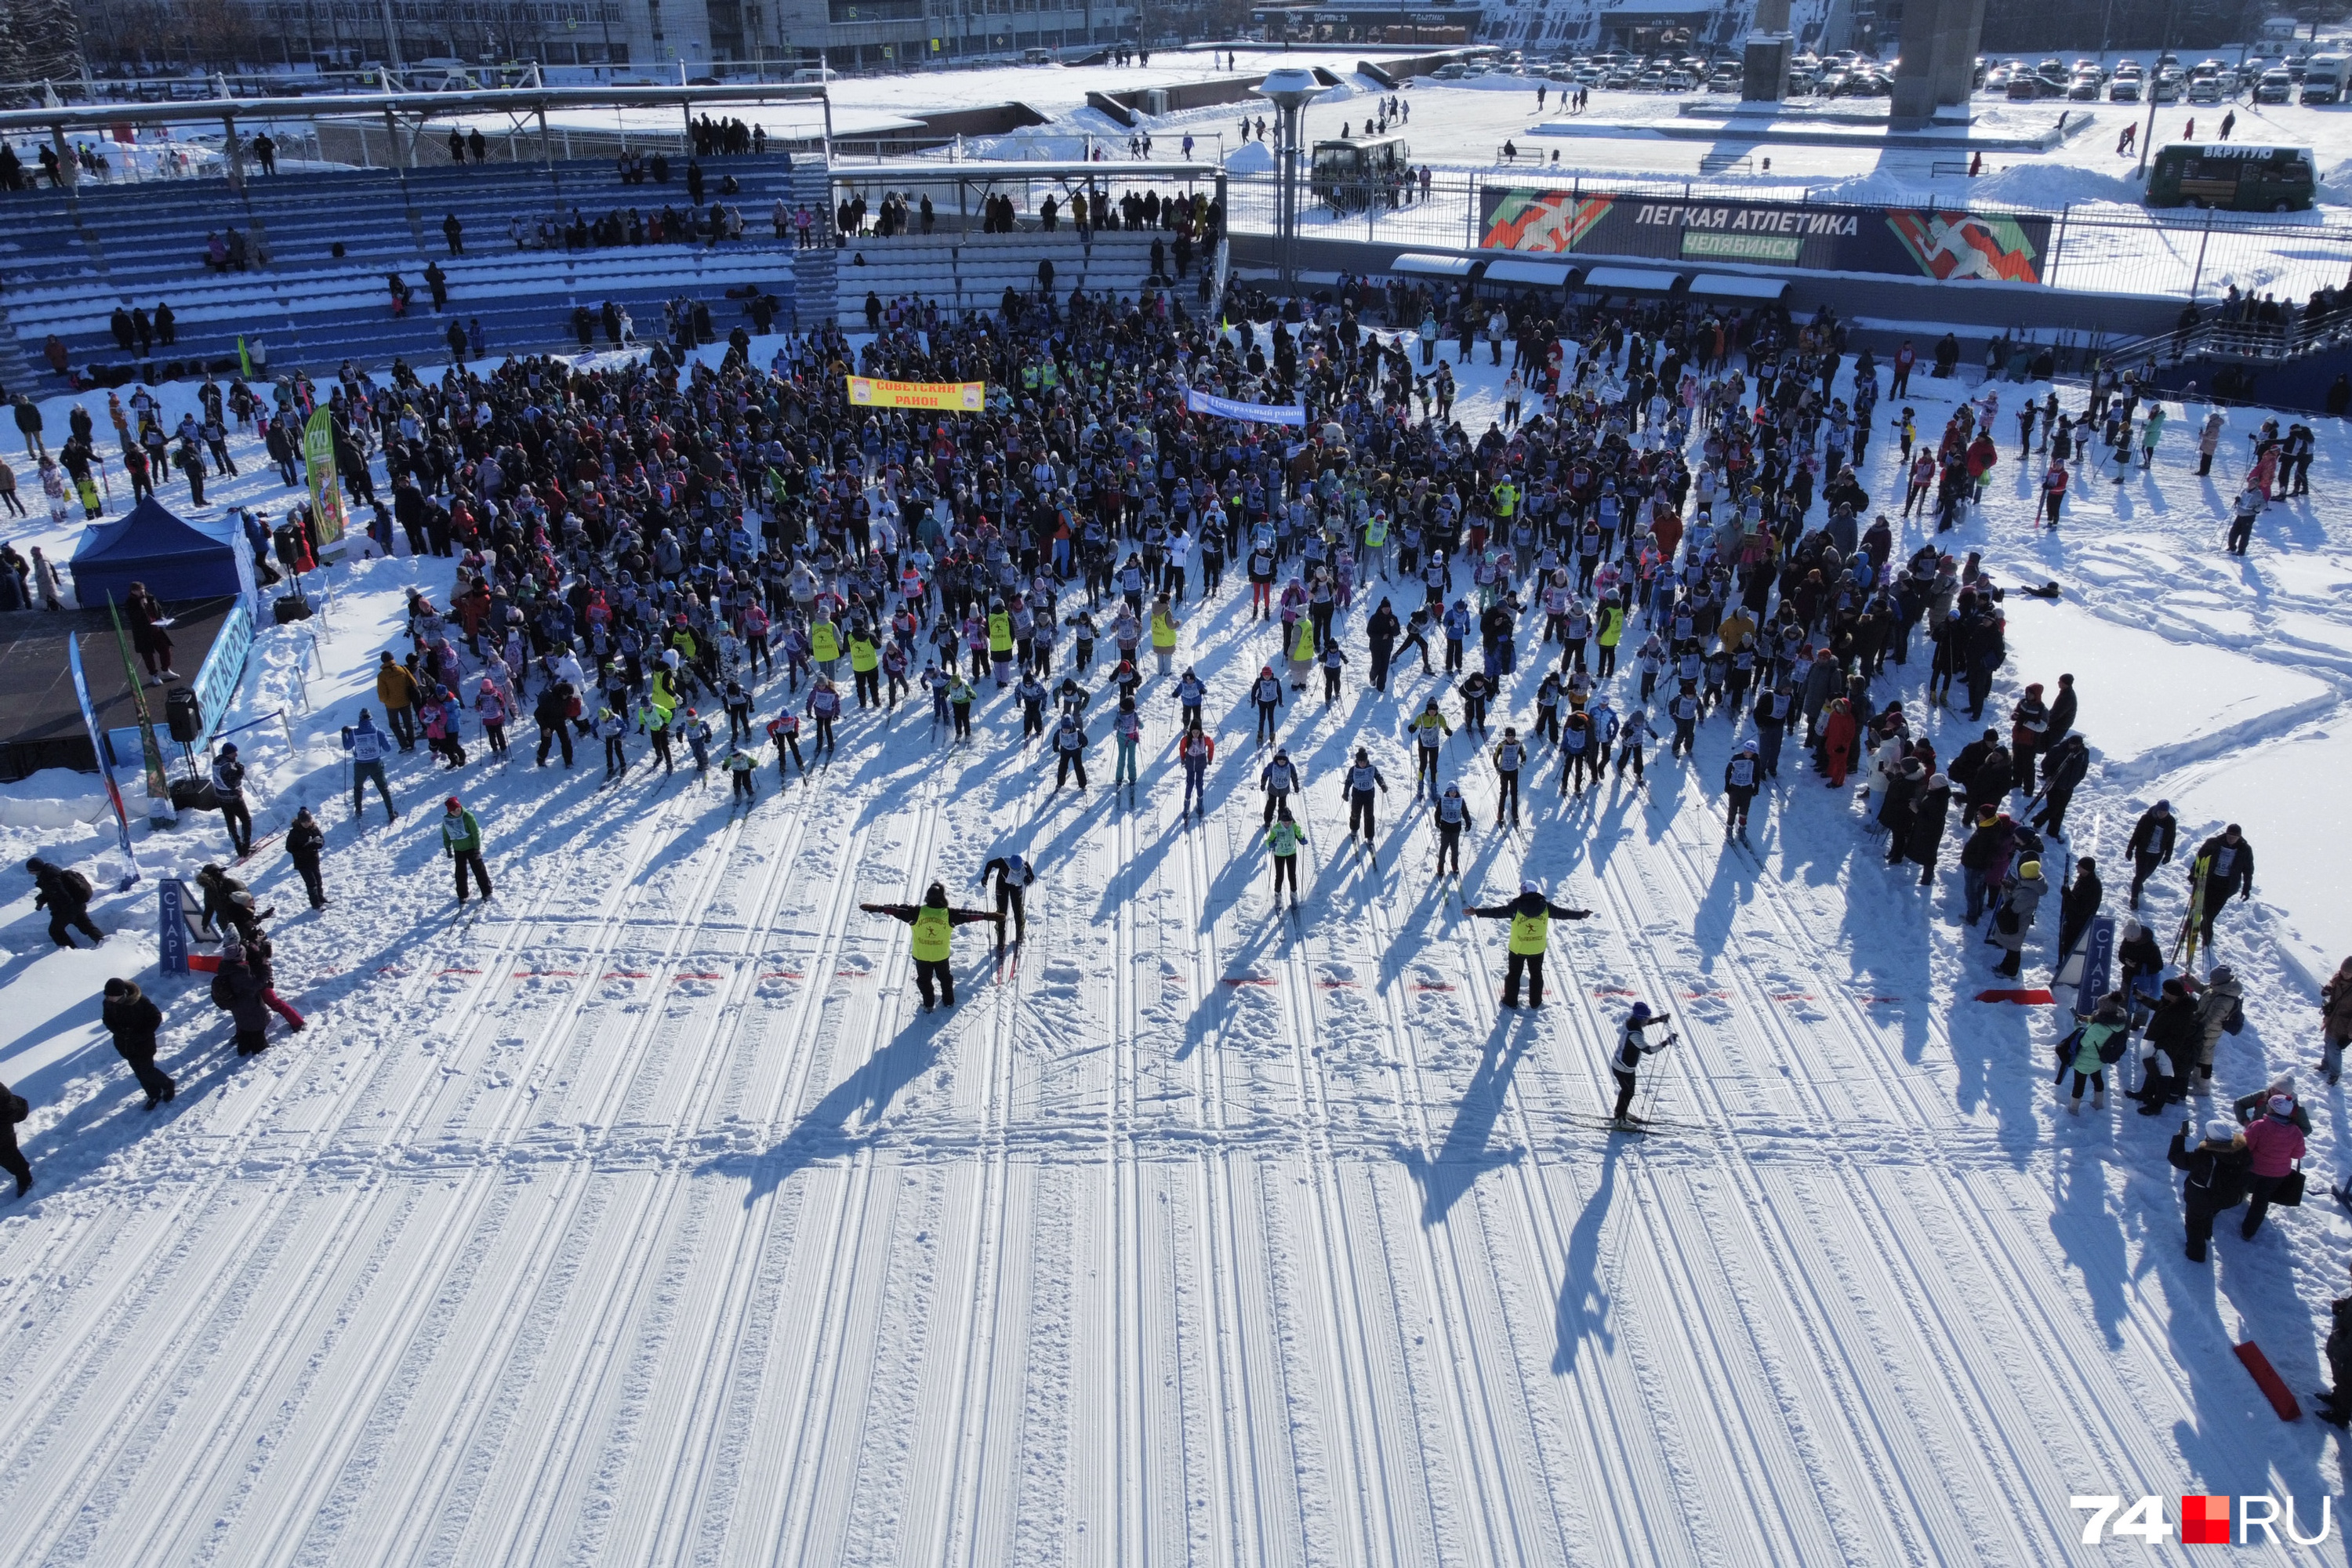 Сейчас поклонников лыж, может, и стало поменьше, но «Лыжня России» по-прежнему собирает тысячи участников